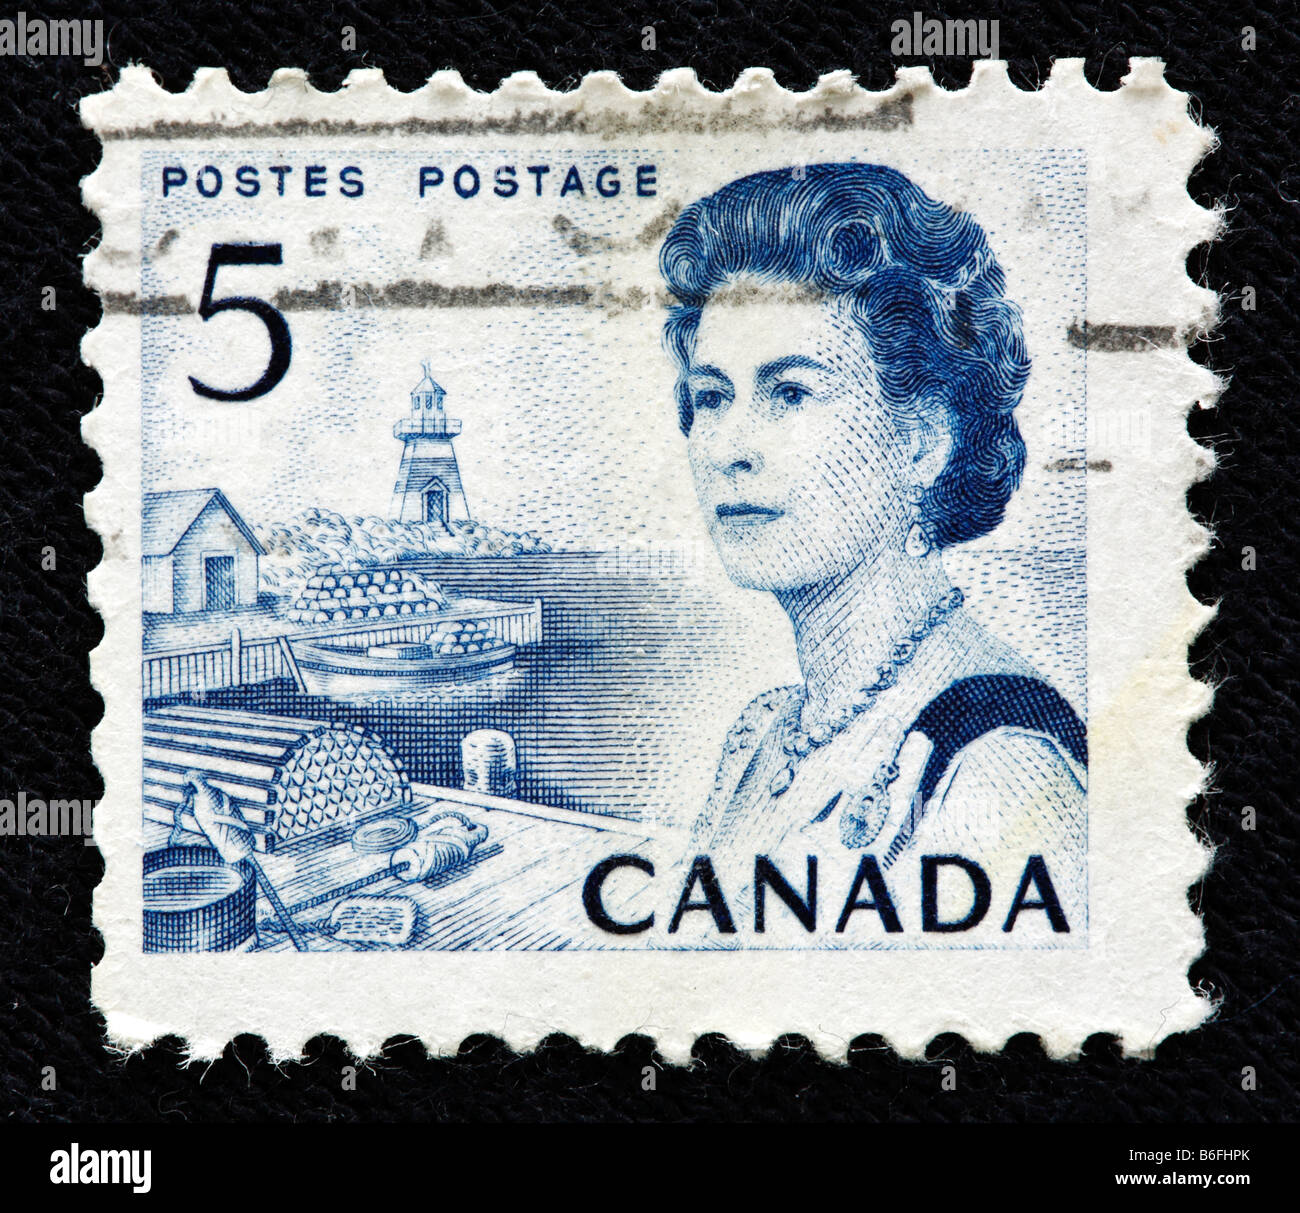 La reine Elizabeth II du Royaume-Uni (1952 à aujourd'hui), timbre-poste, Canada Banque D'Images